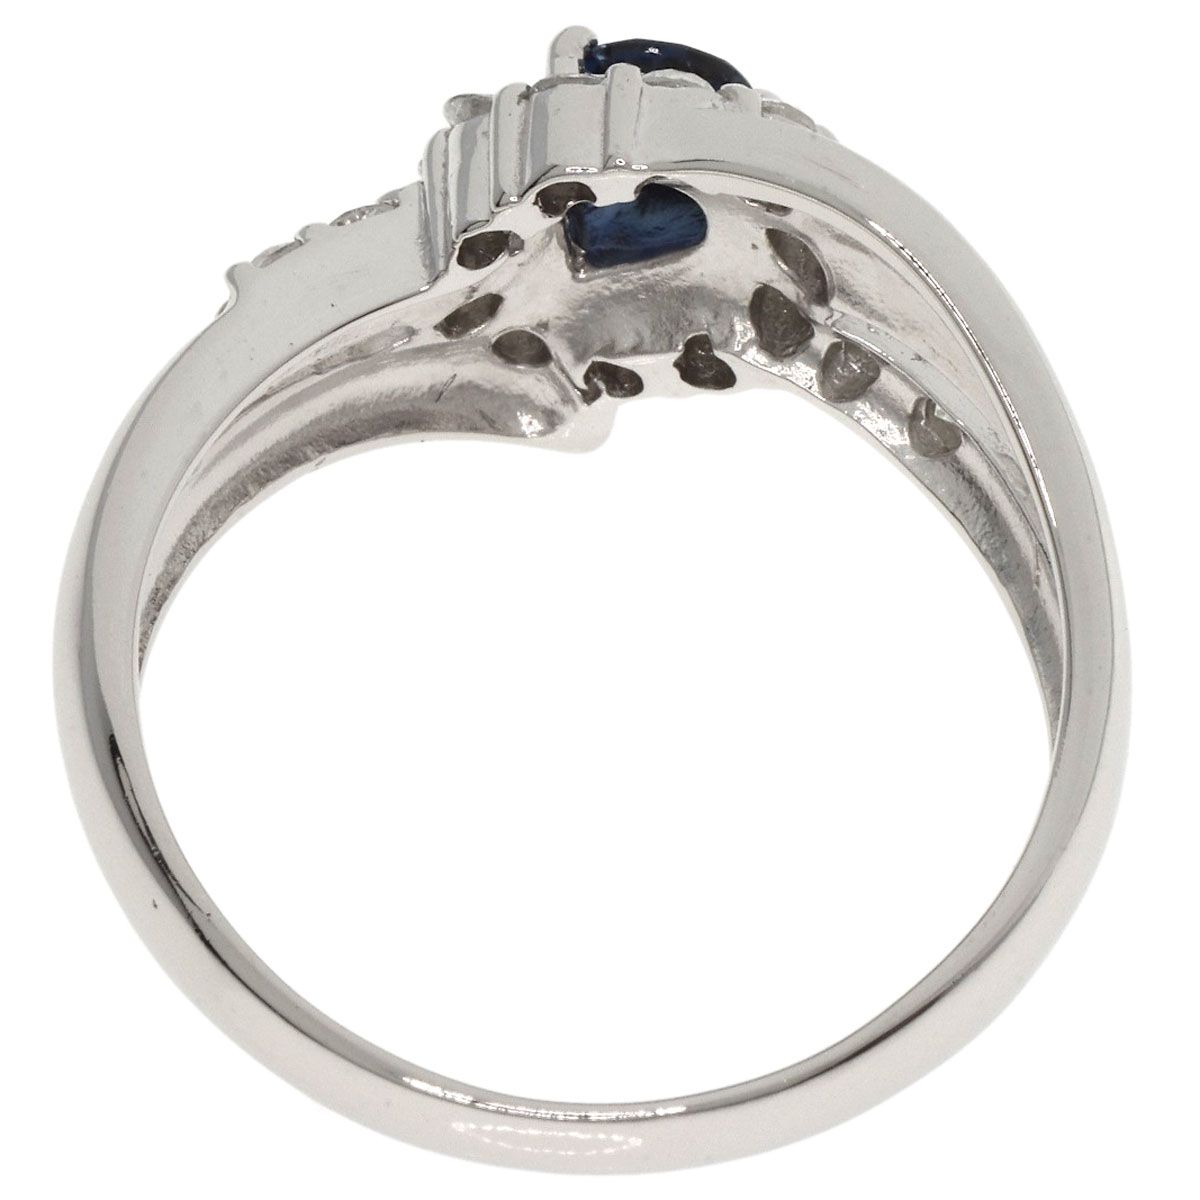 SELECT JEWELRY セレクトジュエリー サファイア ダイヤモンド リング・指輪 PT900 レディース